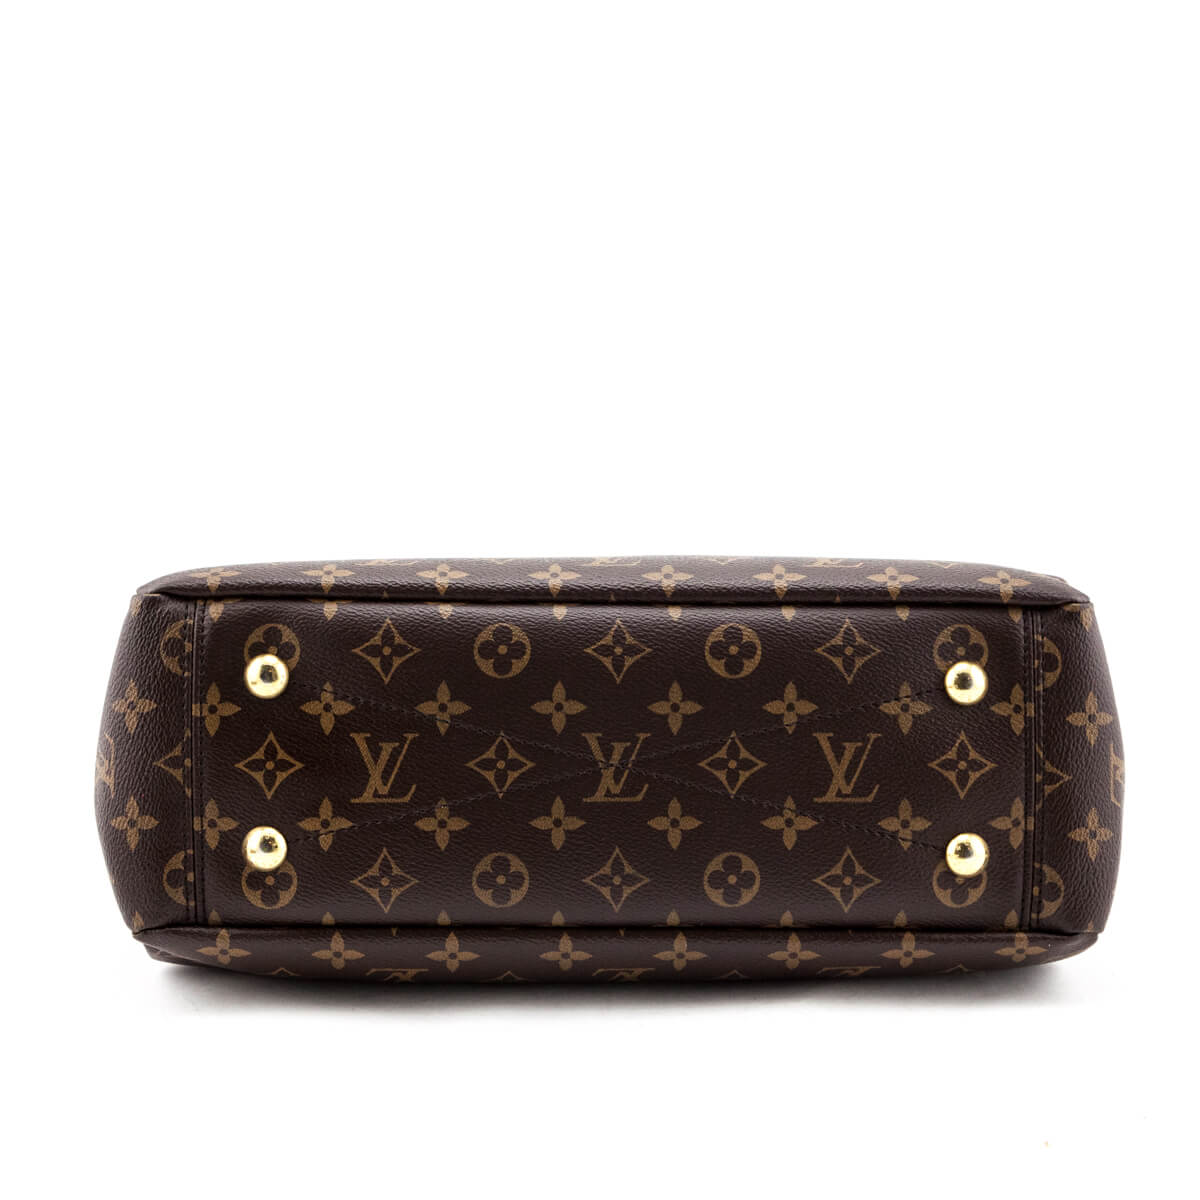 Louis Vuitton Monogram Cerise Pallas Shopper - Louis Vuitton Handbags